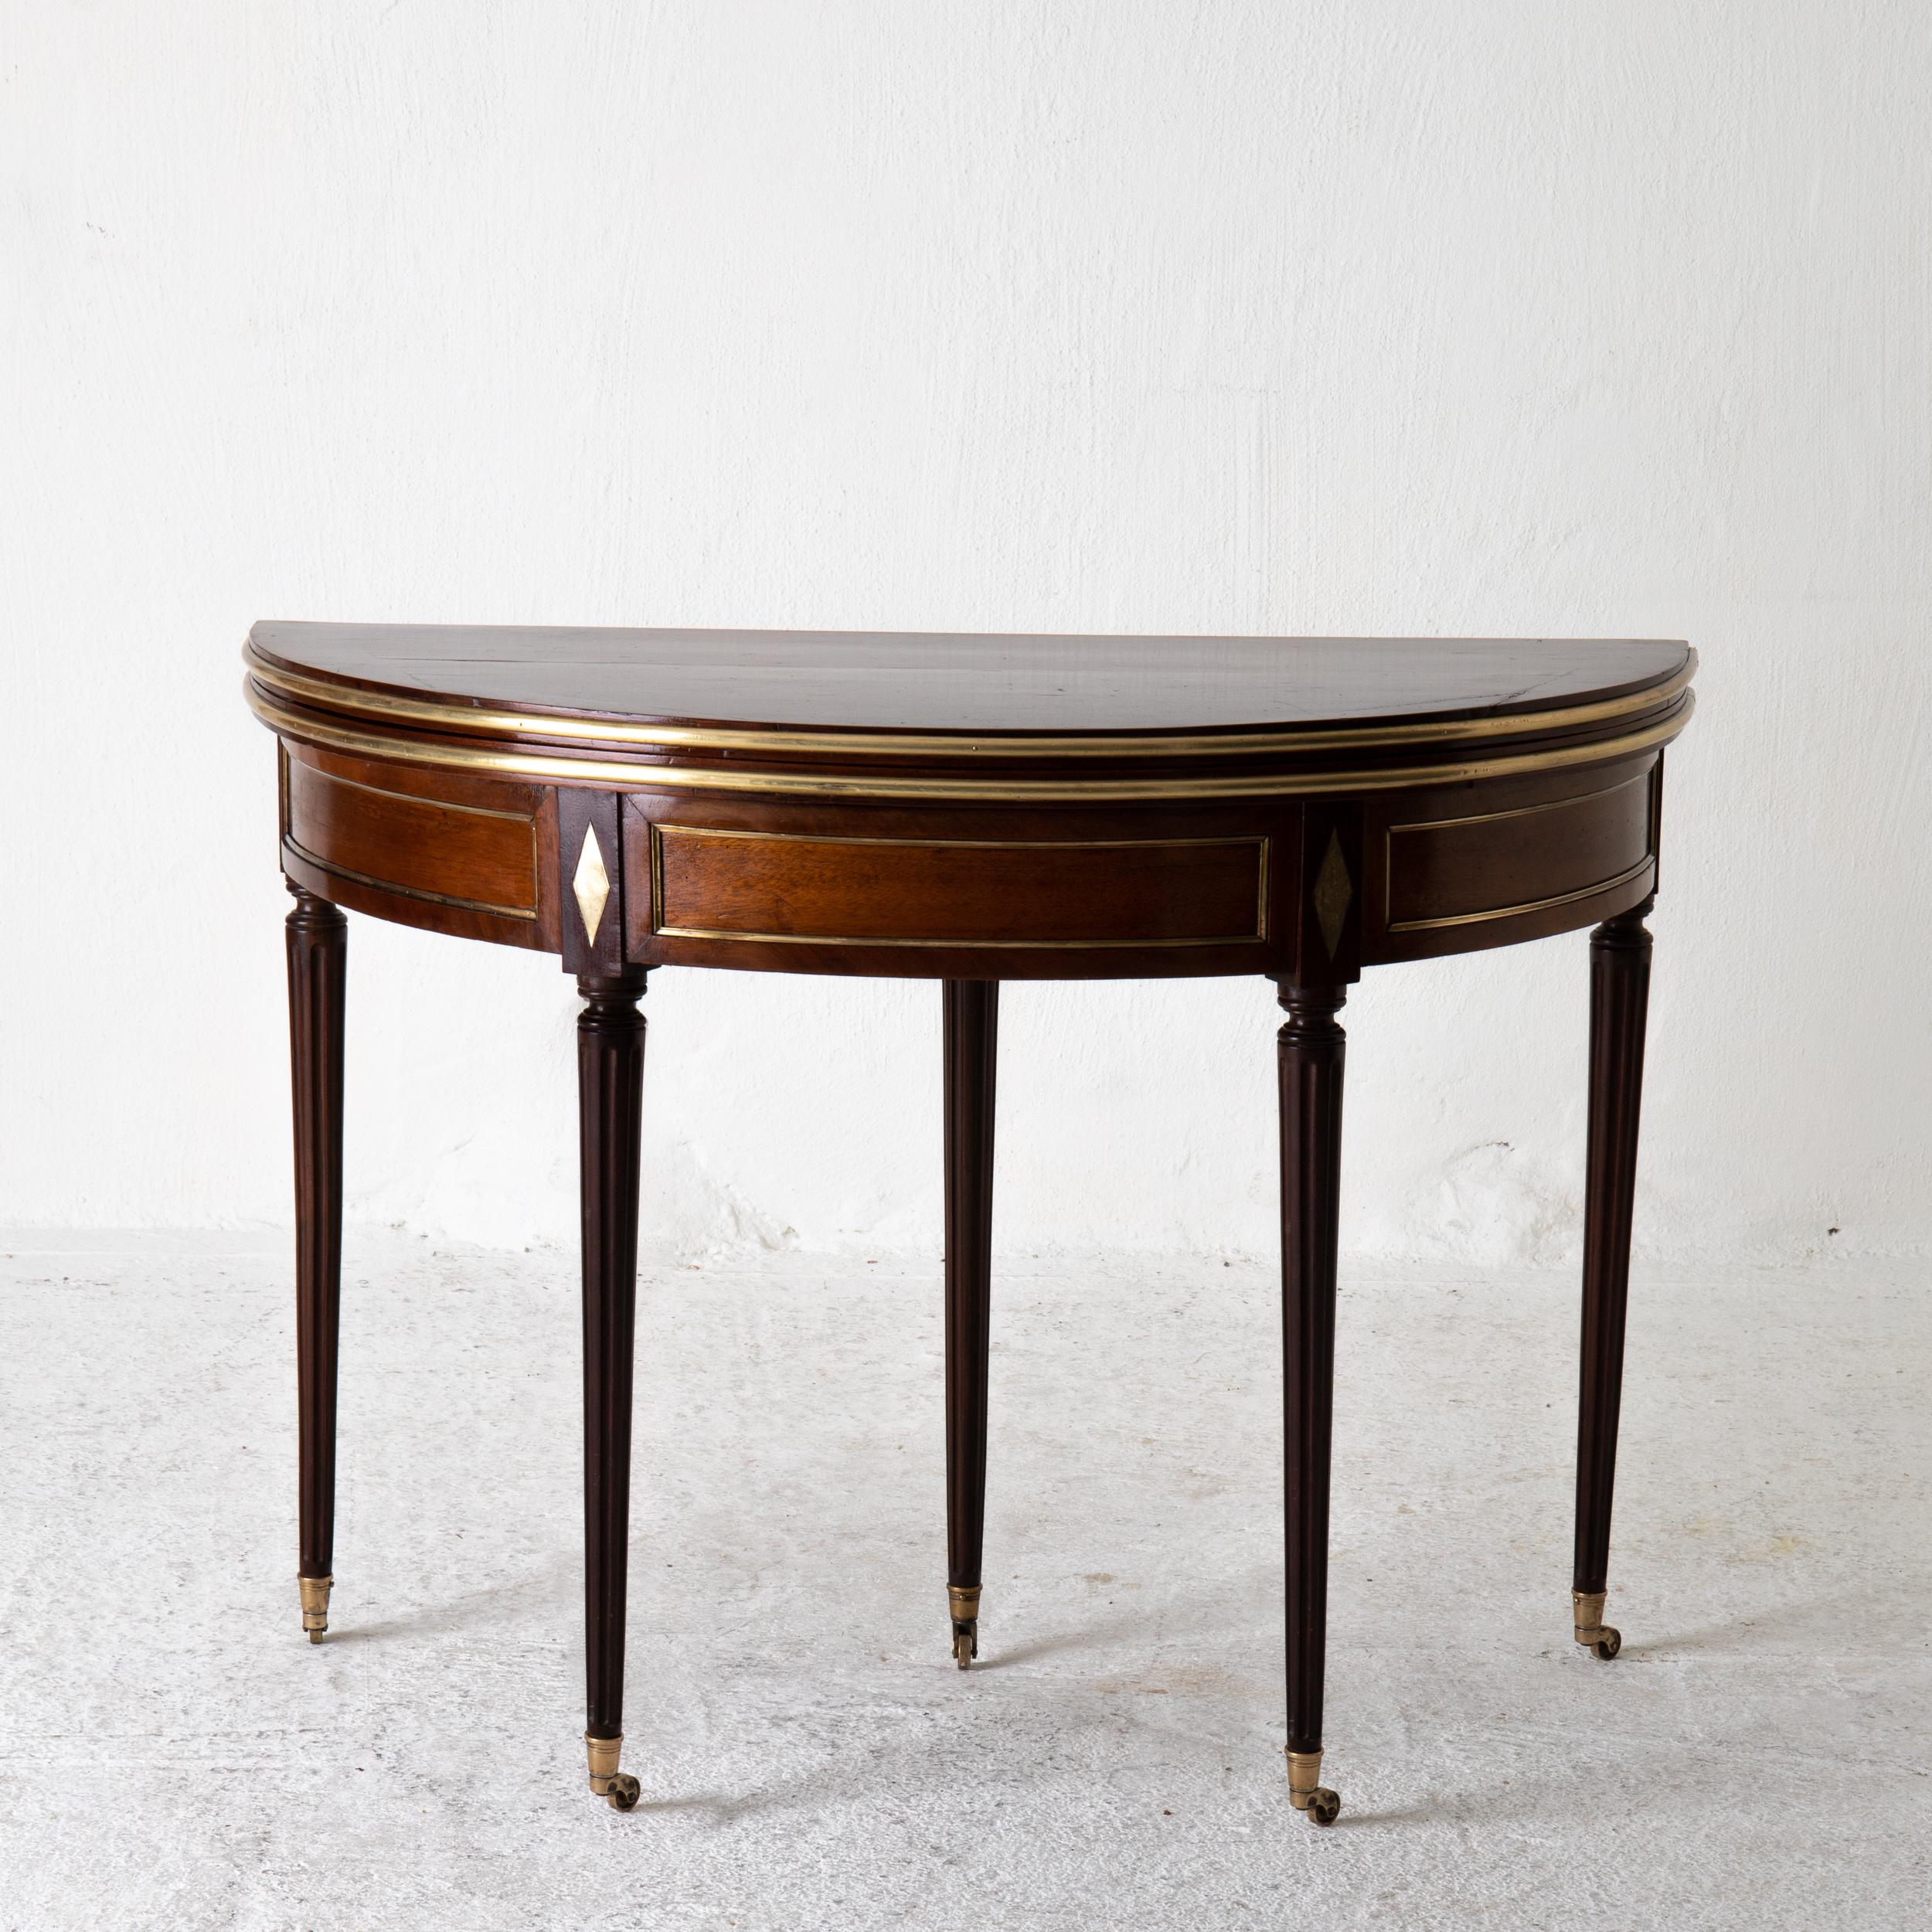 Tischspiel Directoire 19. Jahrhundert Französisch Mahagoni Messing Lederplatte, Frankreich. Ein Spieltisch aus dem 19. Jahrhundert in Frankreich. Demi lune öffnet sich zu einem runden Tisch. Die geriffelten und abgerundeten Beine enden in